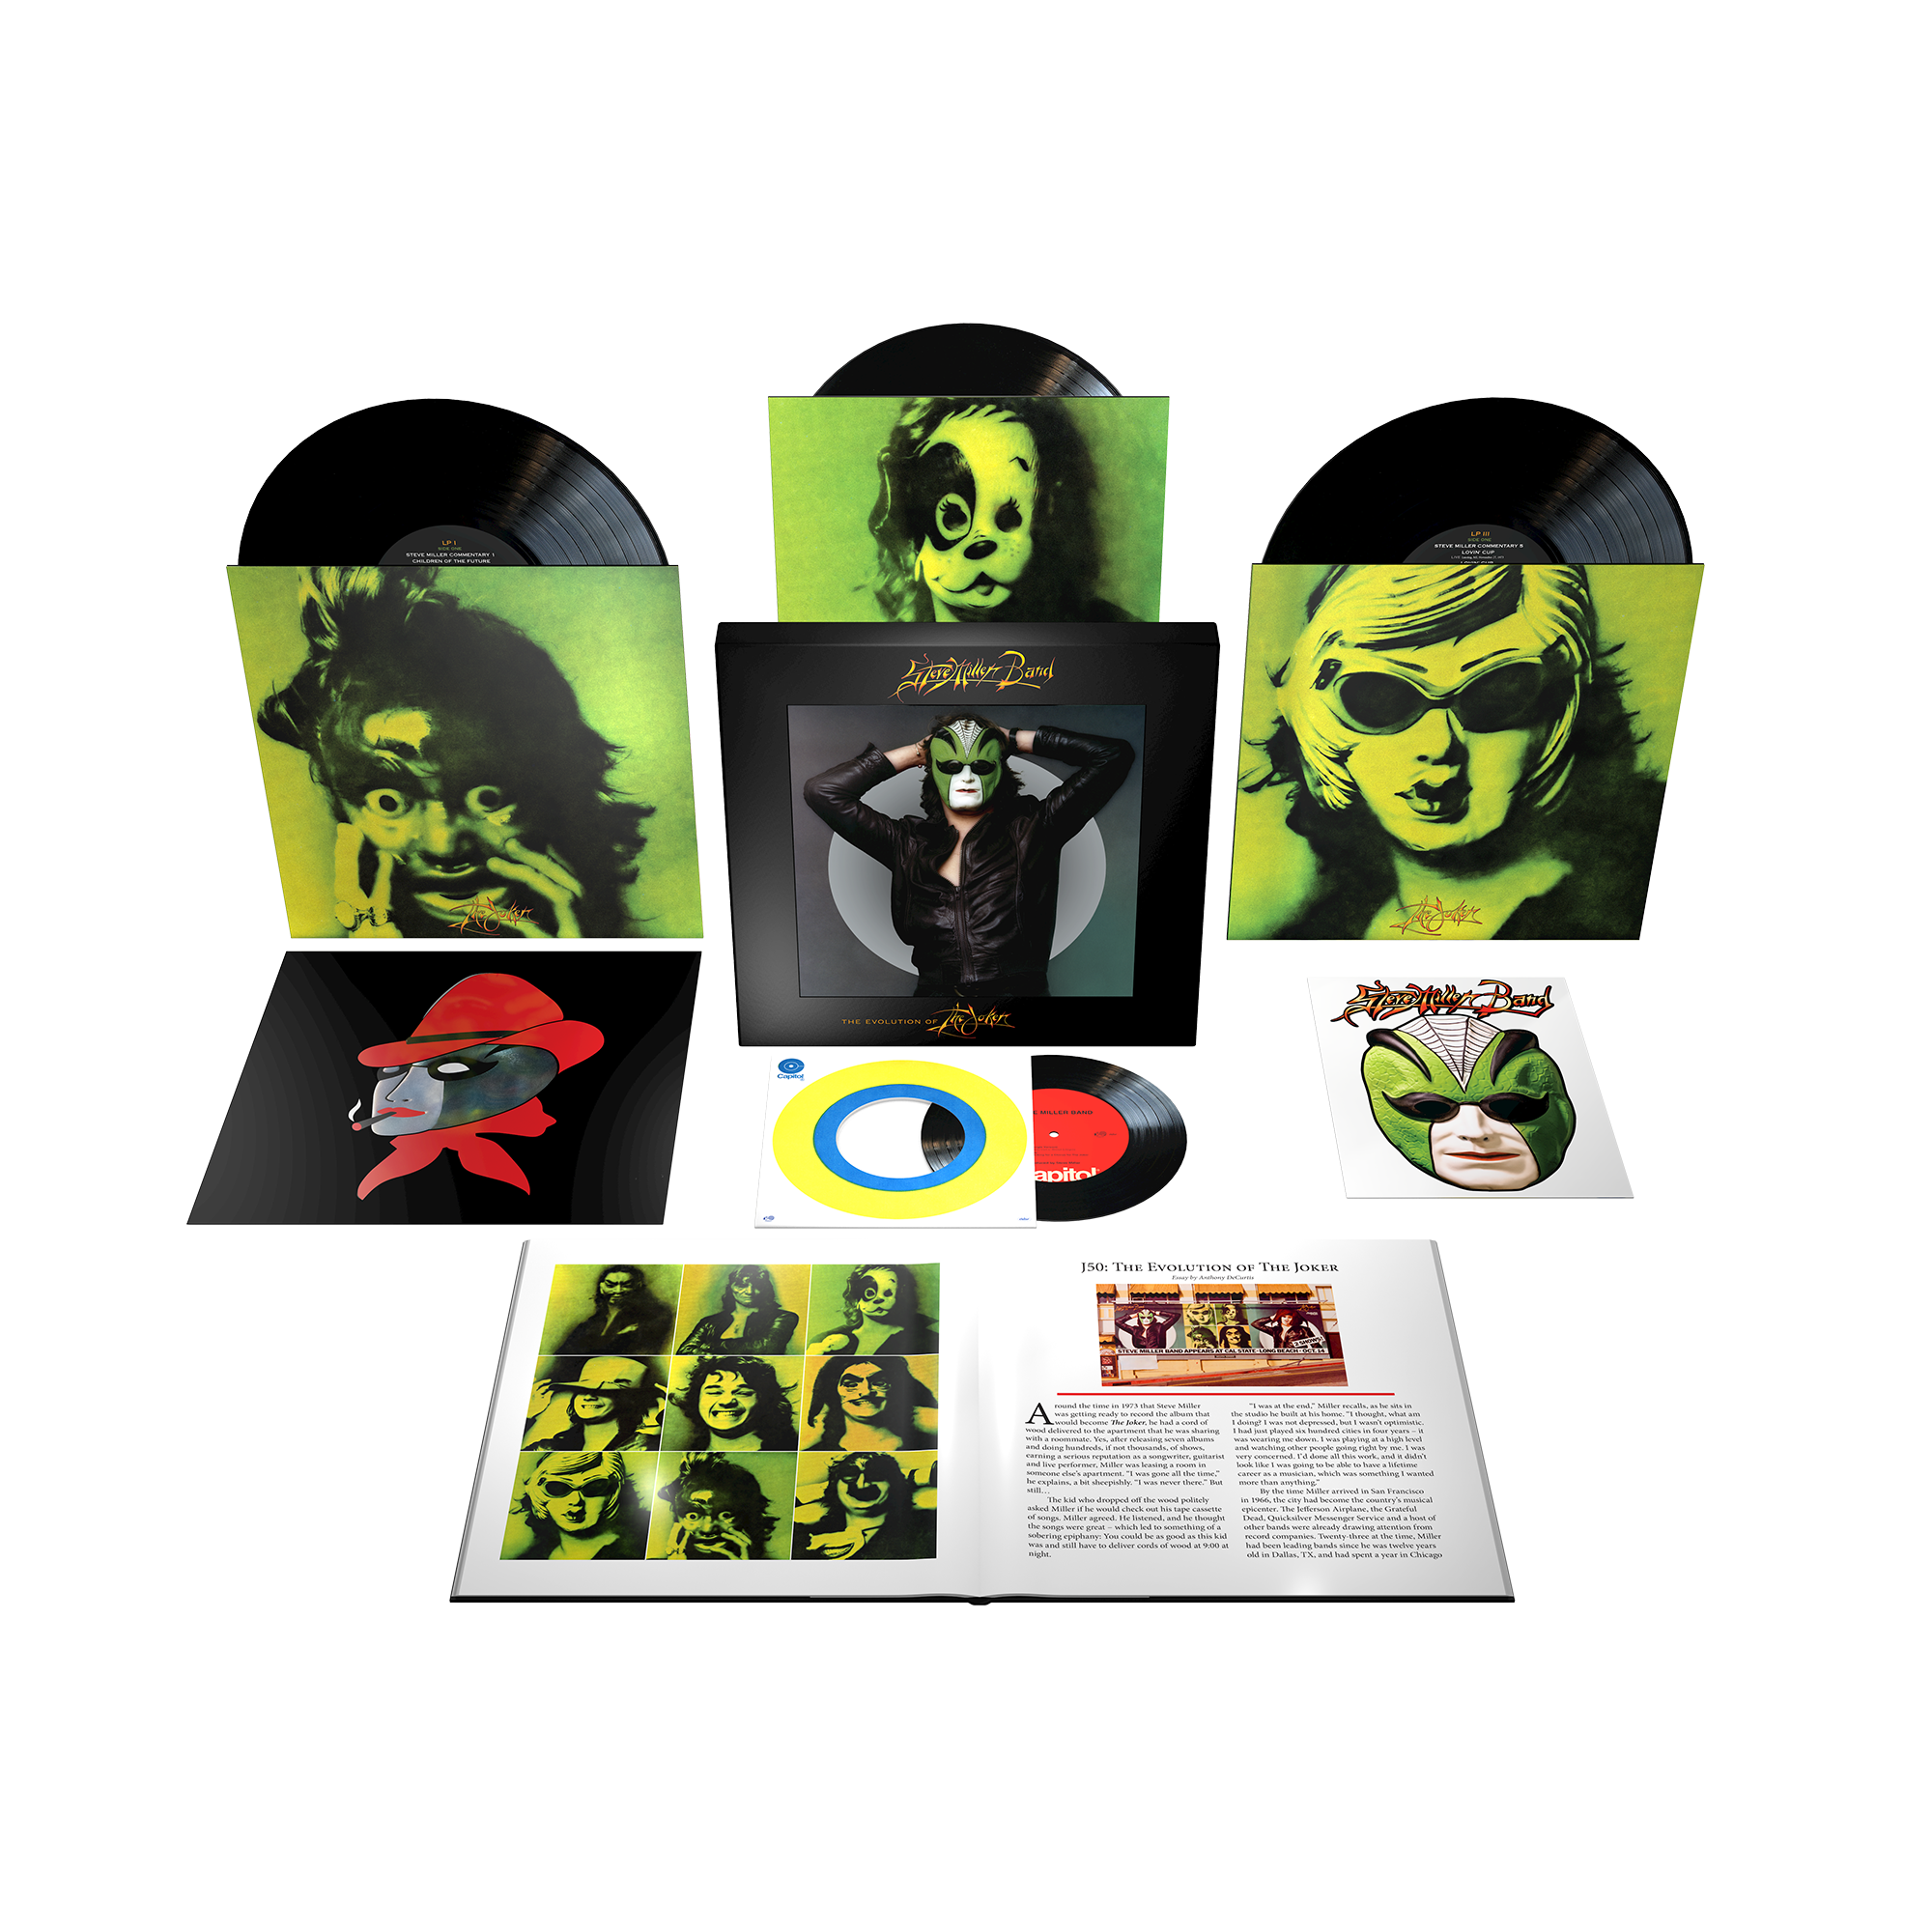 Steve Miller Band - J50 - The Evolution of the Joker: 3LP + 7" Vinyl Box Set